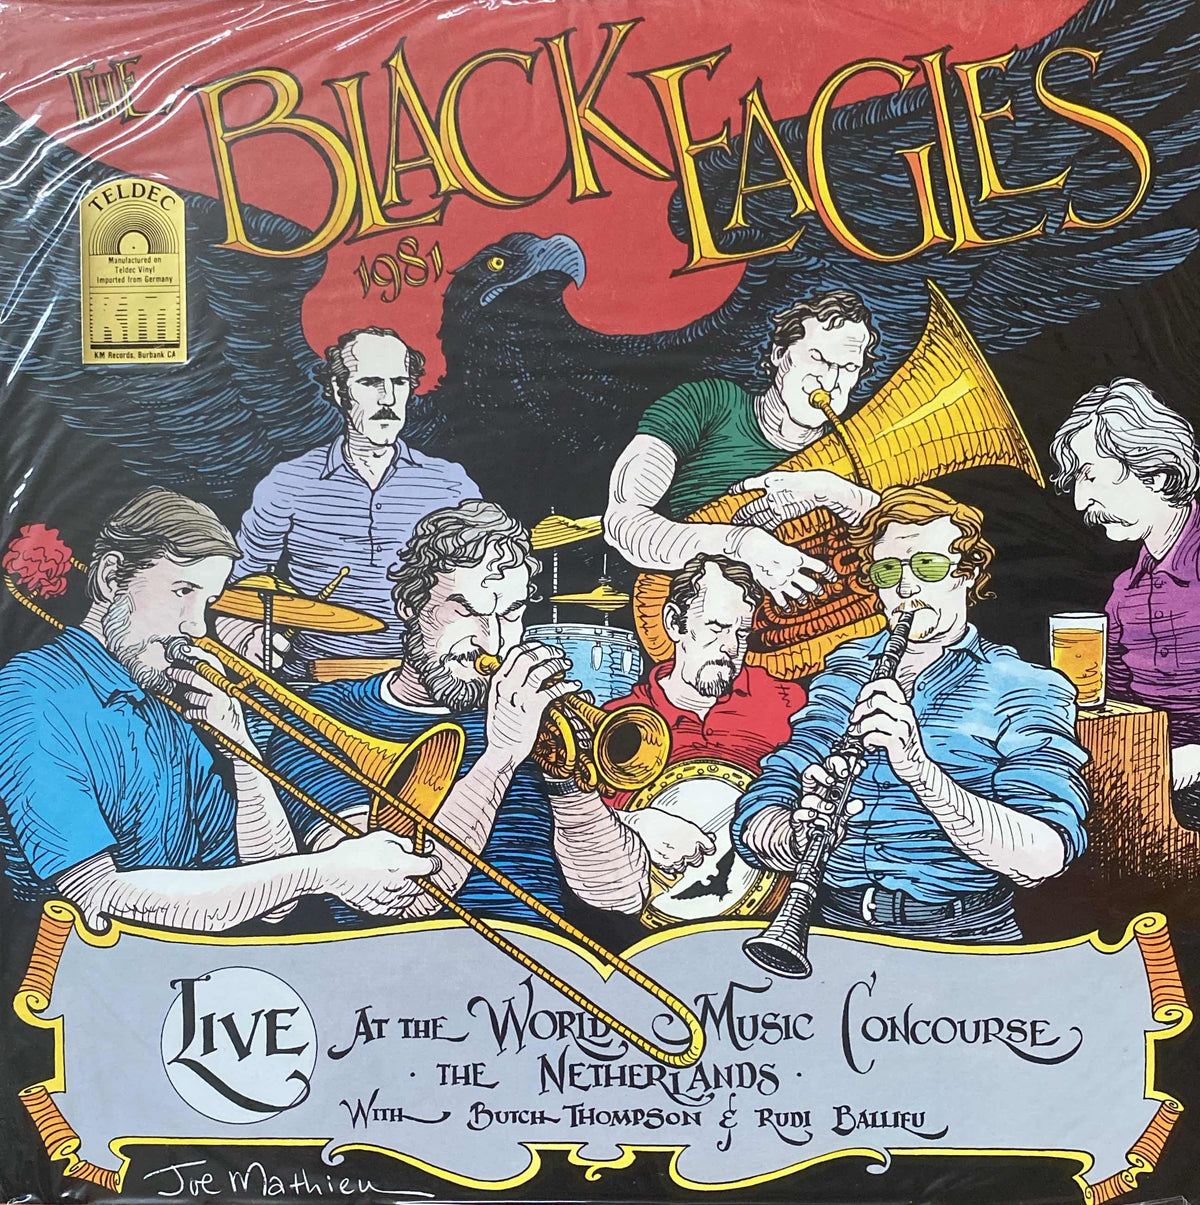 Black Eagle Jazz Band - 1981